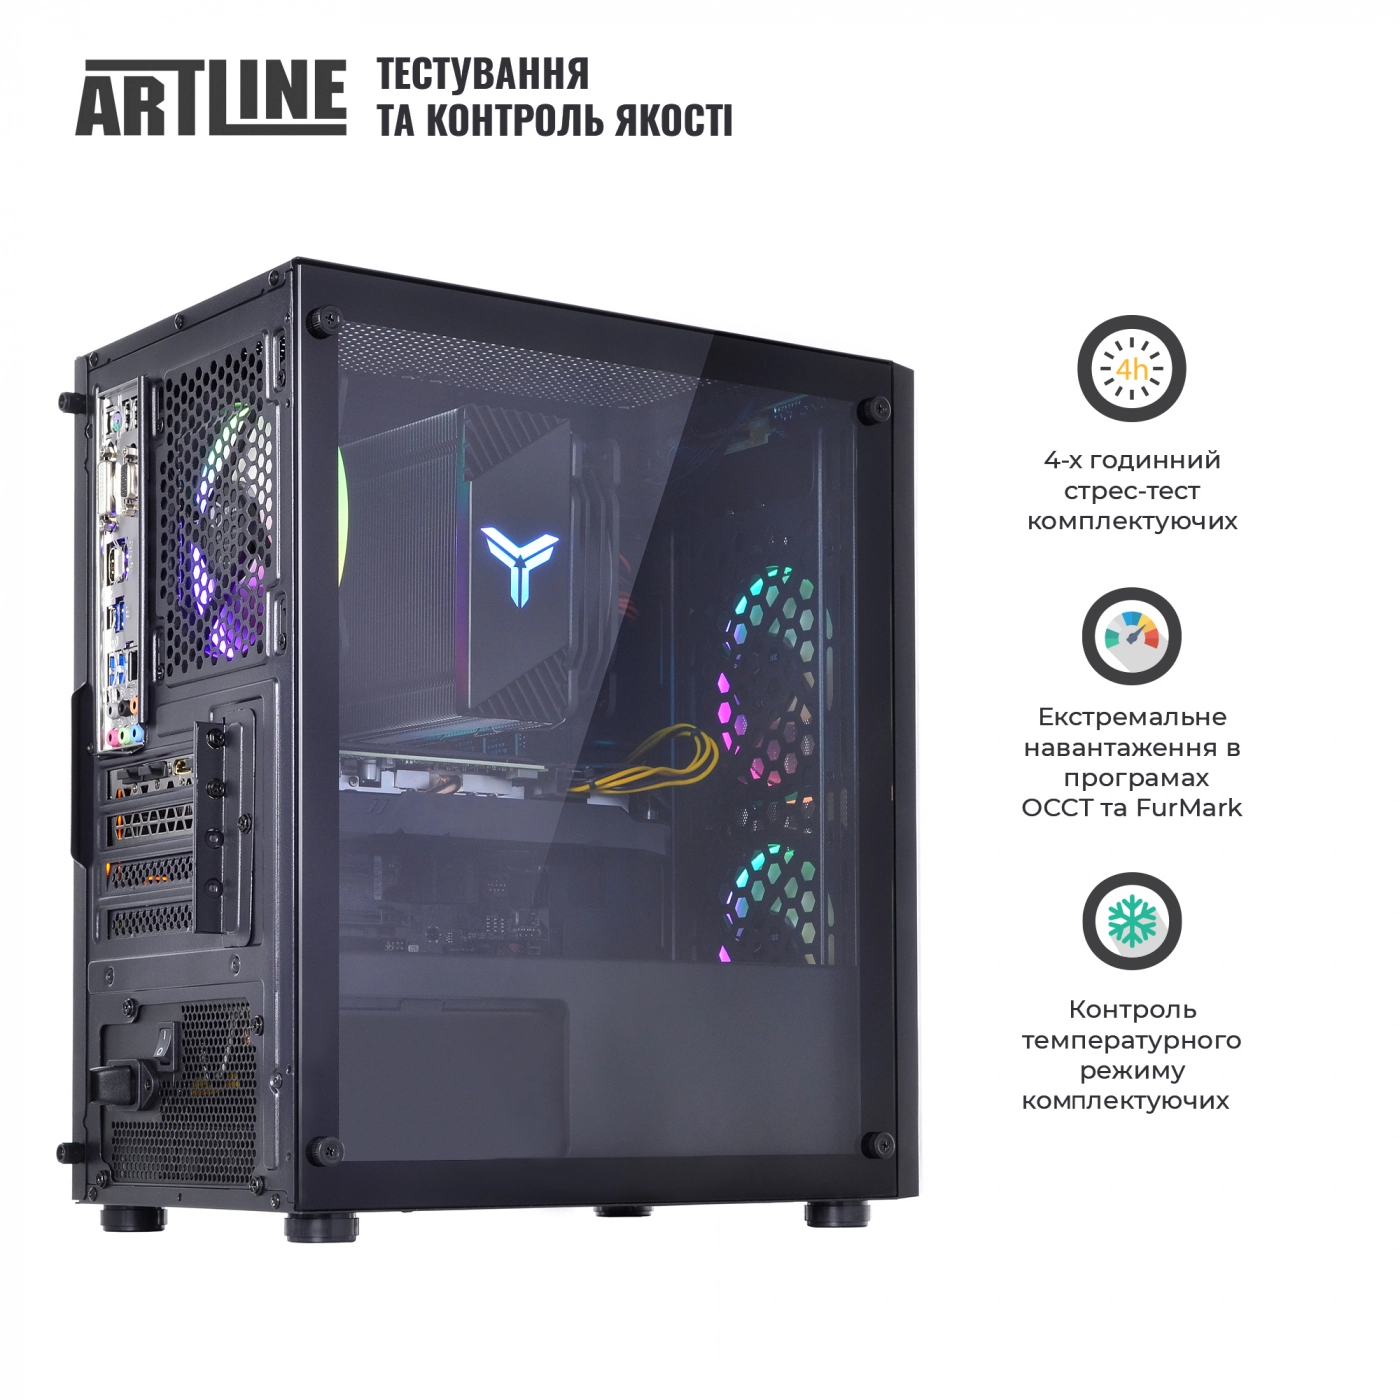 Купить Компьютер ARTLINE Gaming X71v61 - фото 9